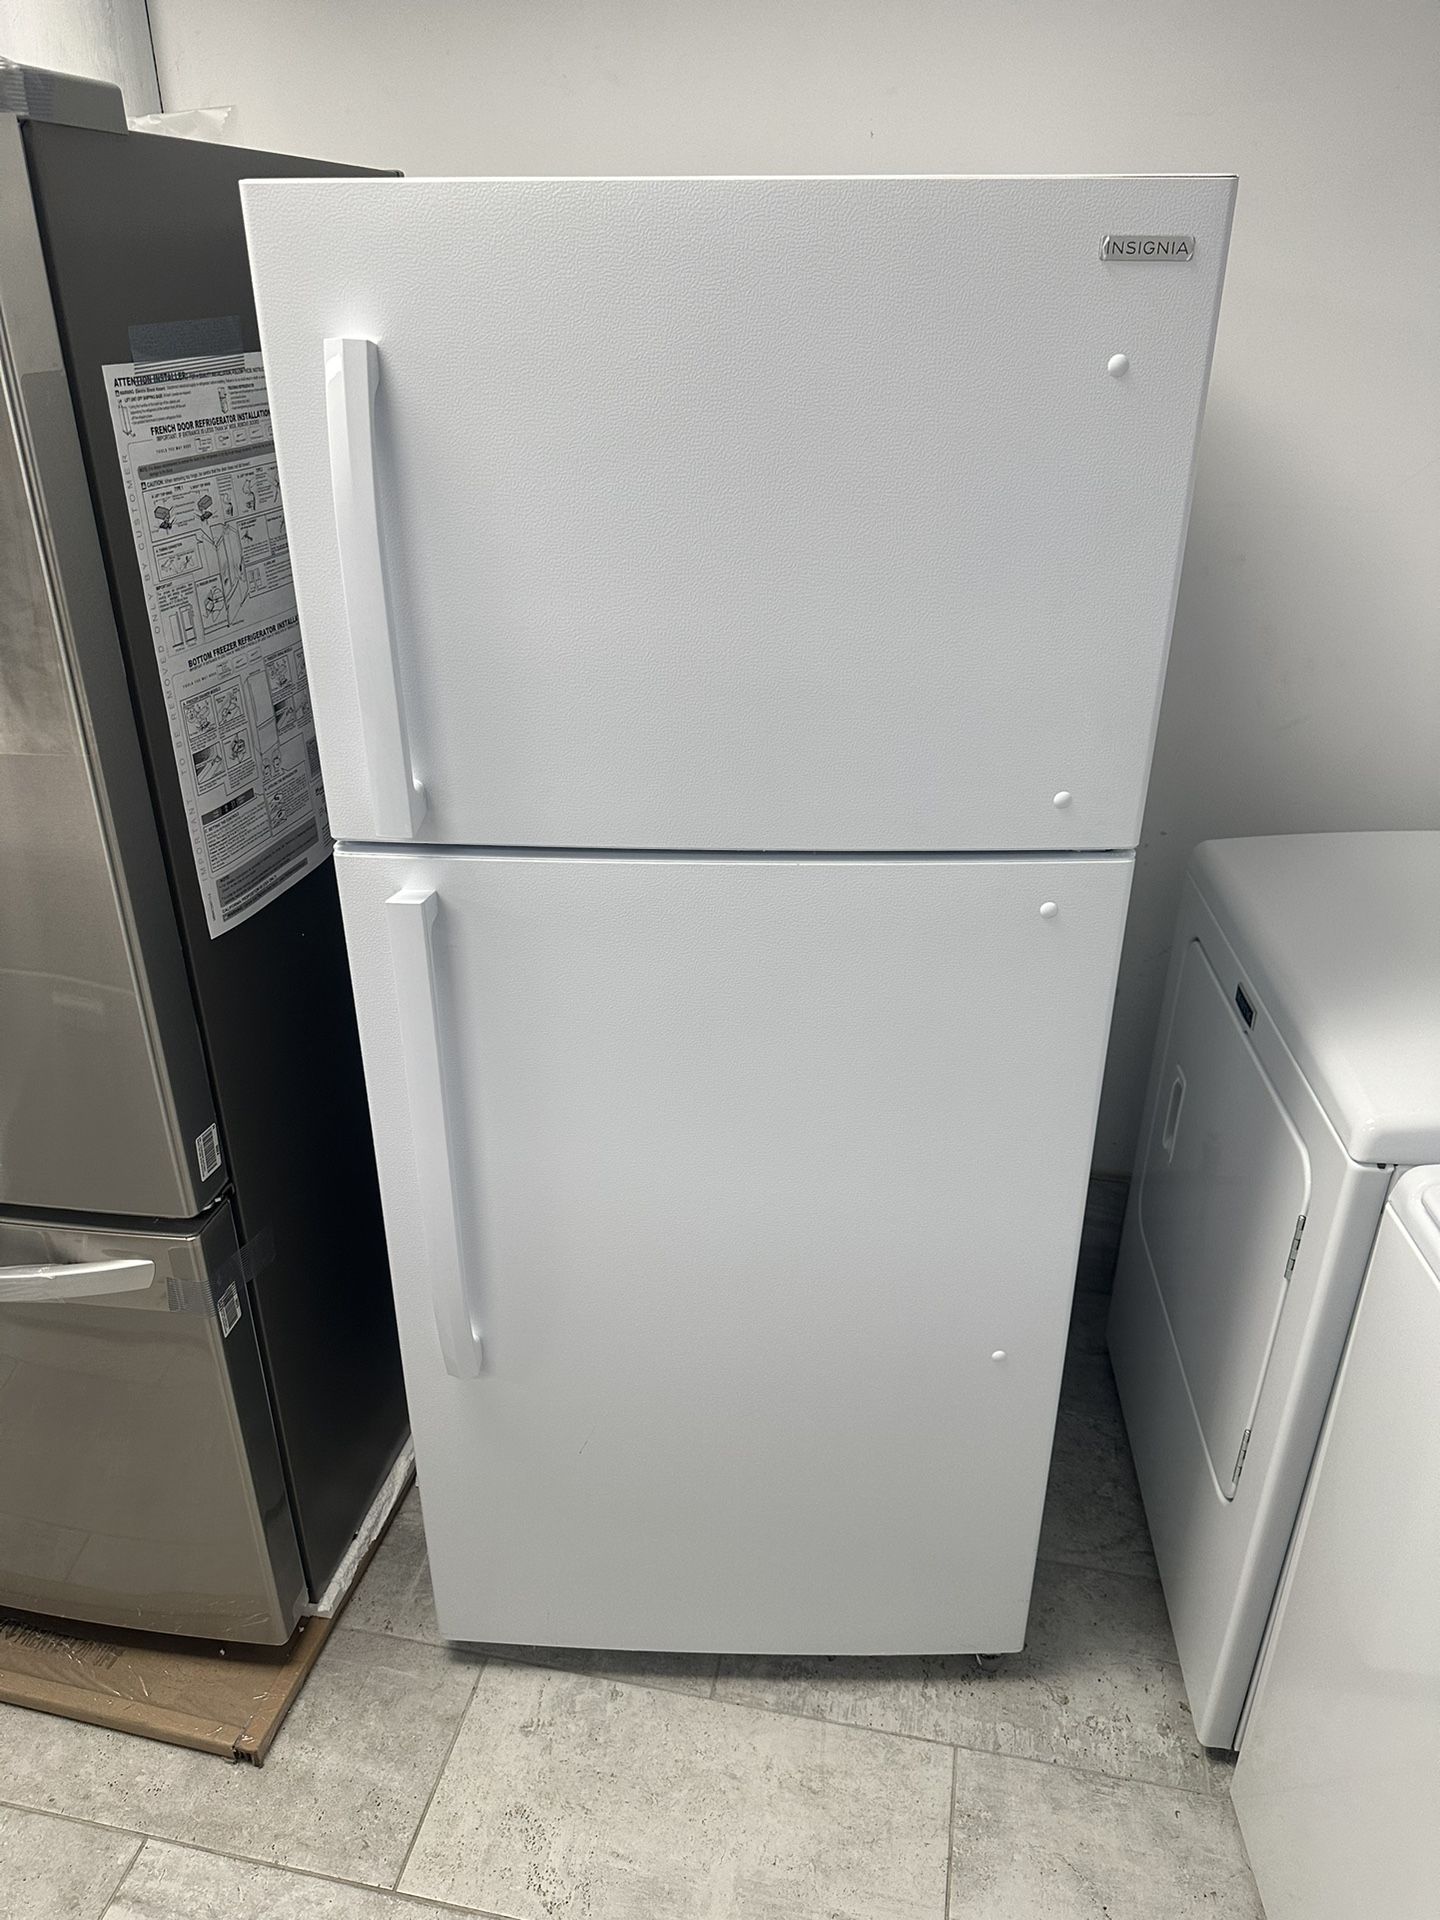 Insignia 18 Cu.ft Top Freezer Refrigerator White Color 